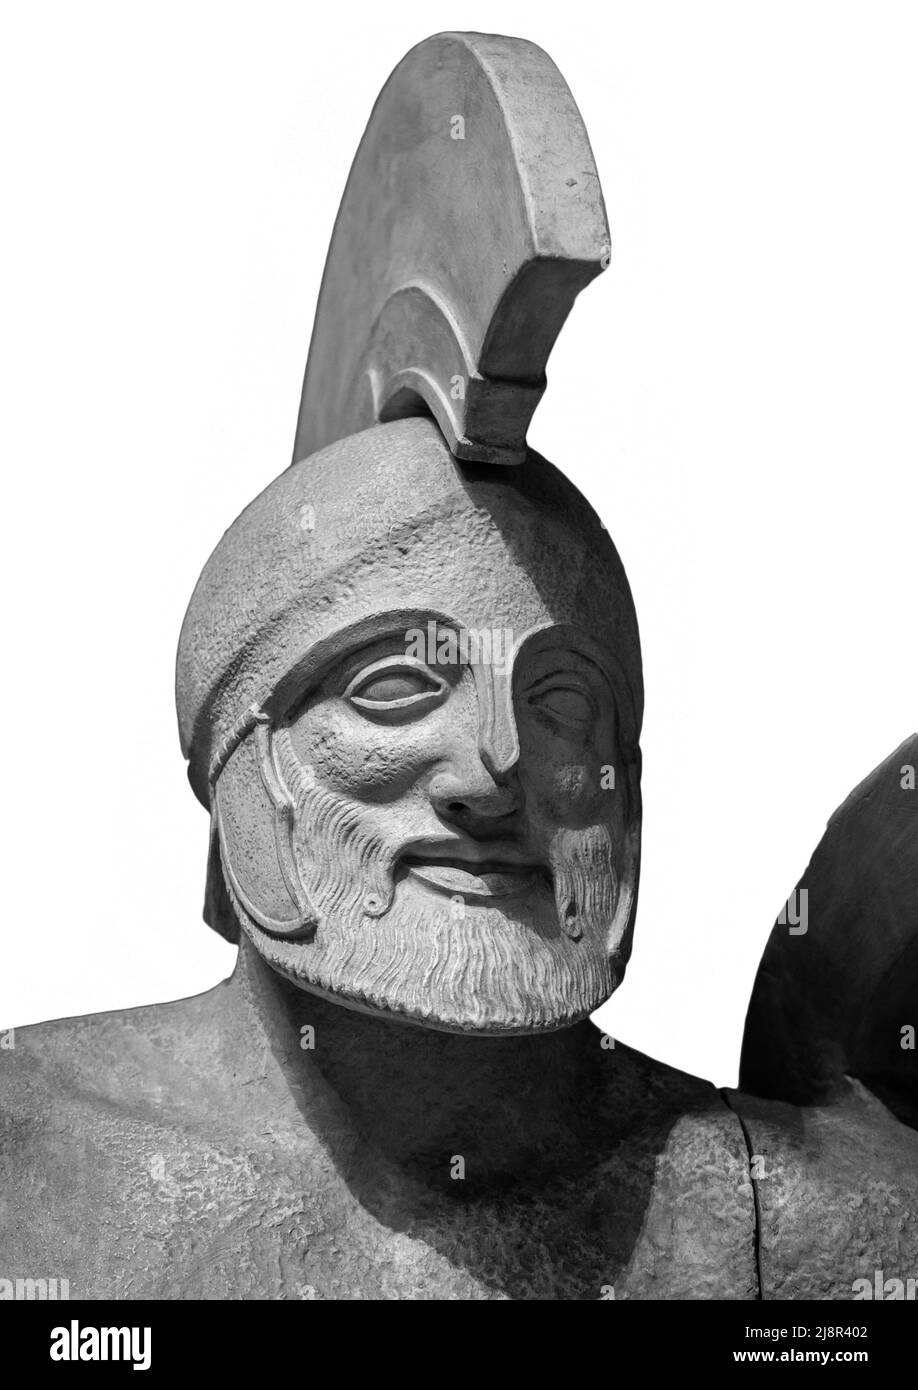 Tête dans casque grec ancienne sculpture de guerrier. Isolé sur fond blanc Banque D'Images